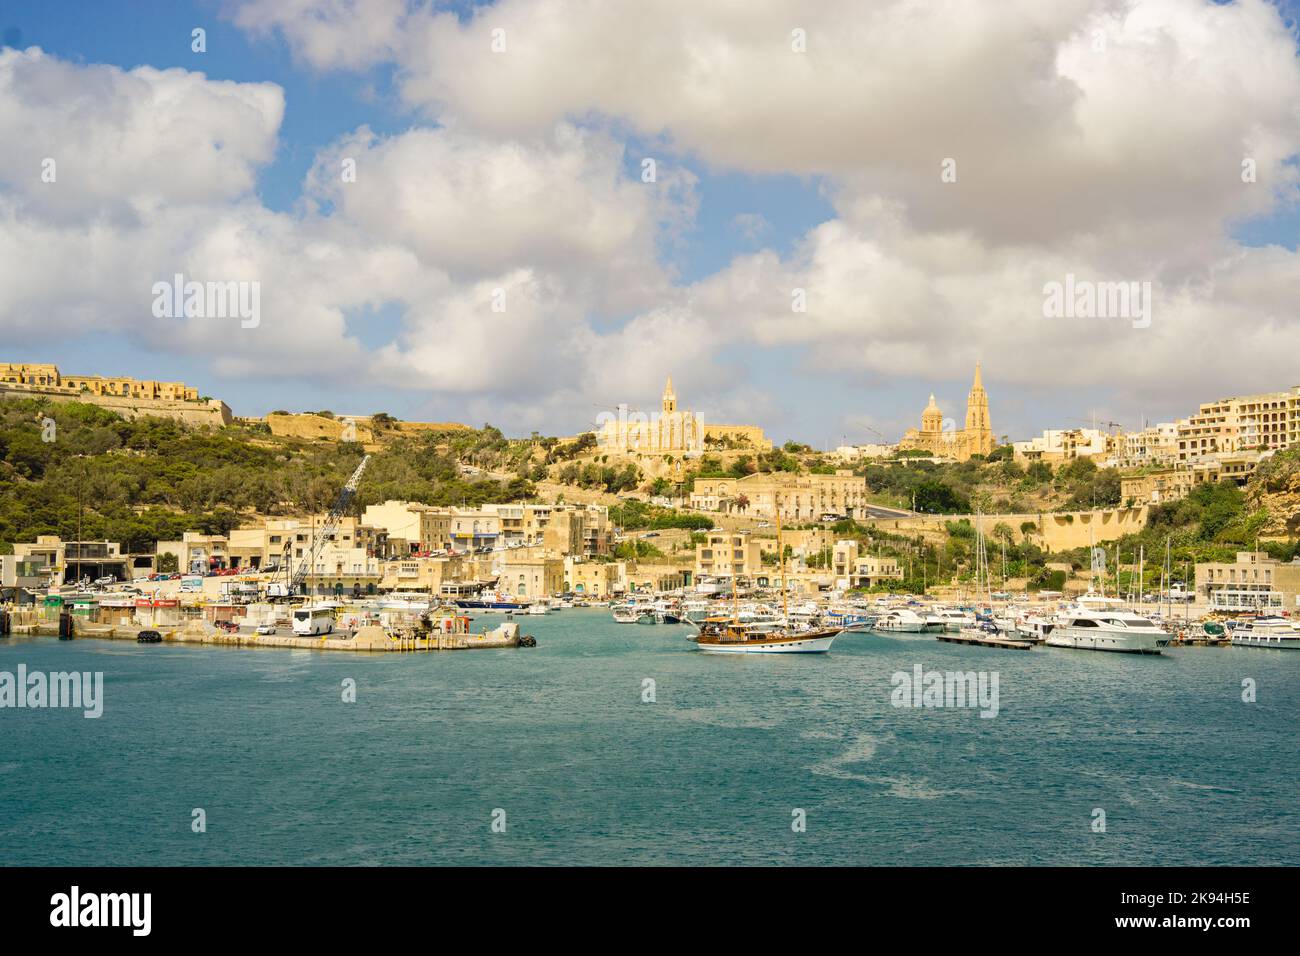 Der Hafen von Gozo mit Booten und die Stadt im Hintergrund unter einem bewölkten Himmel. Stockfoto